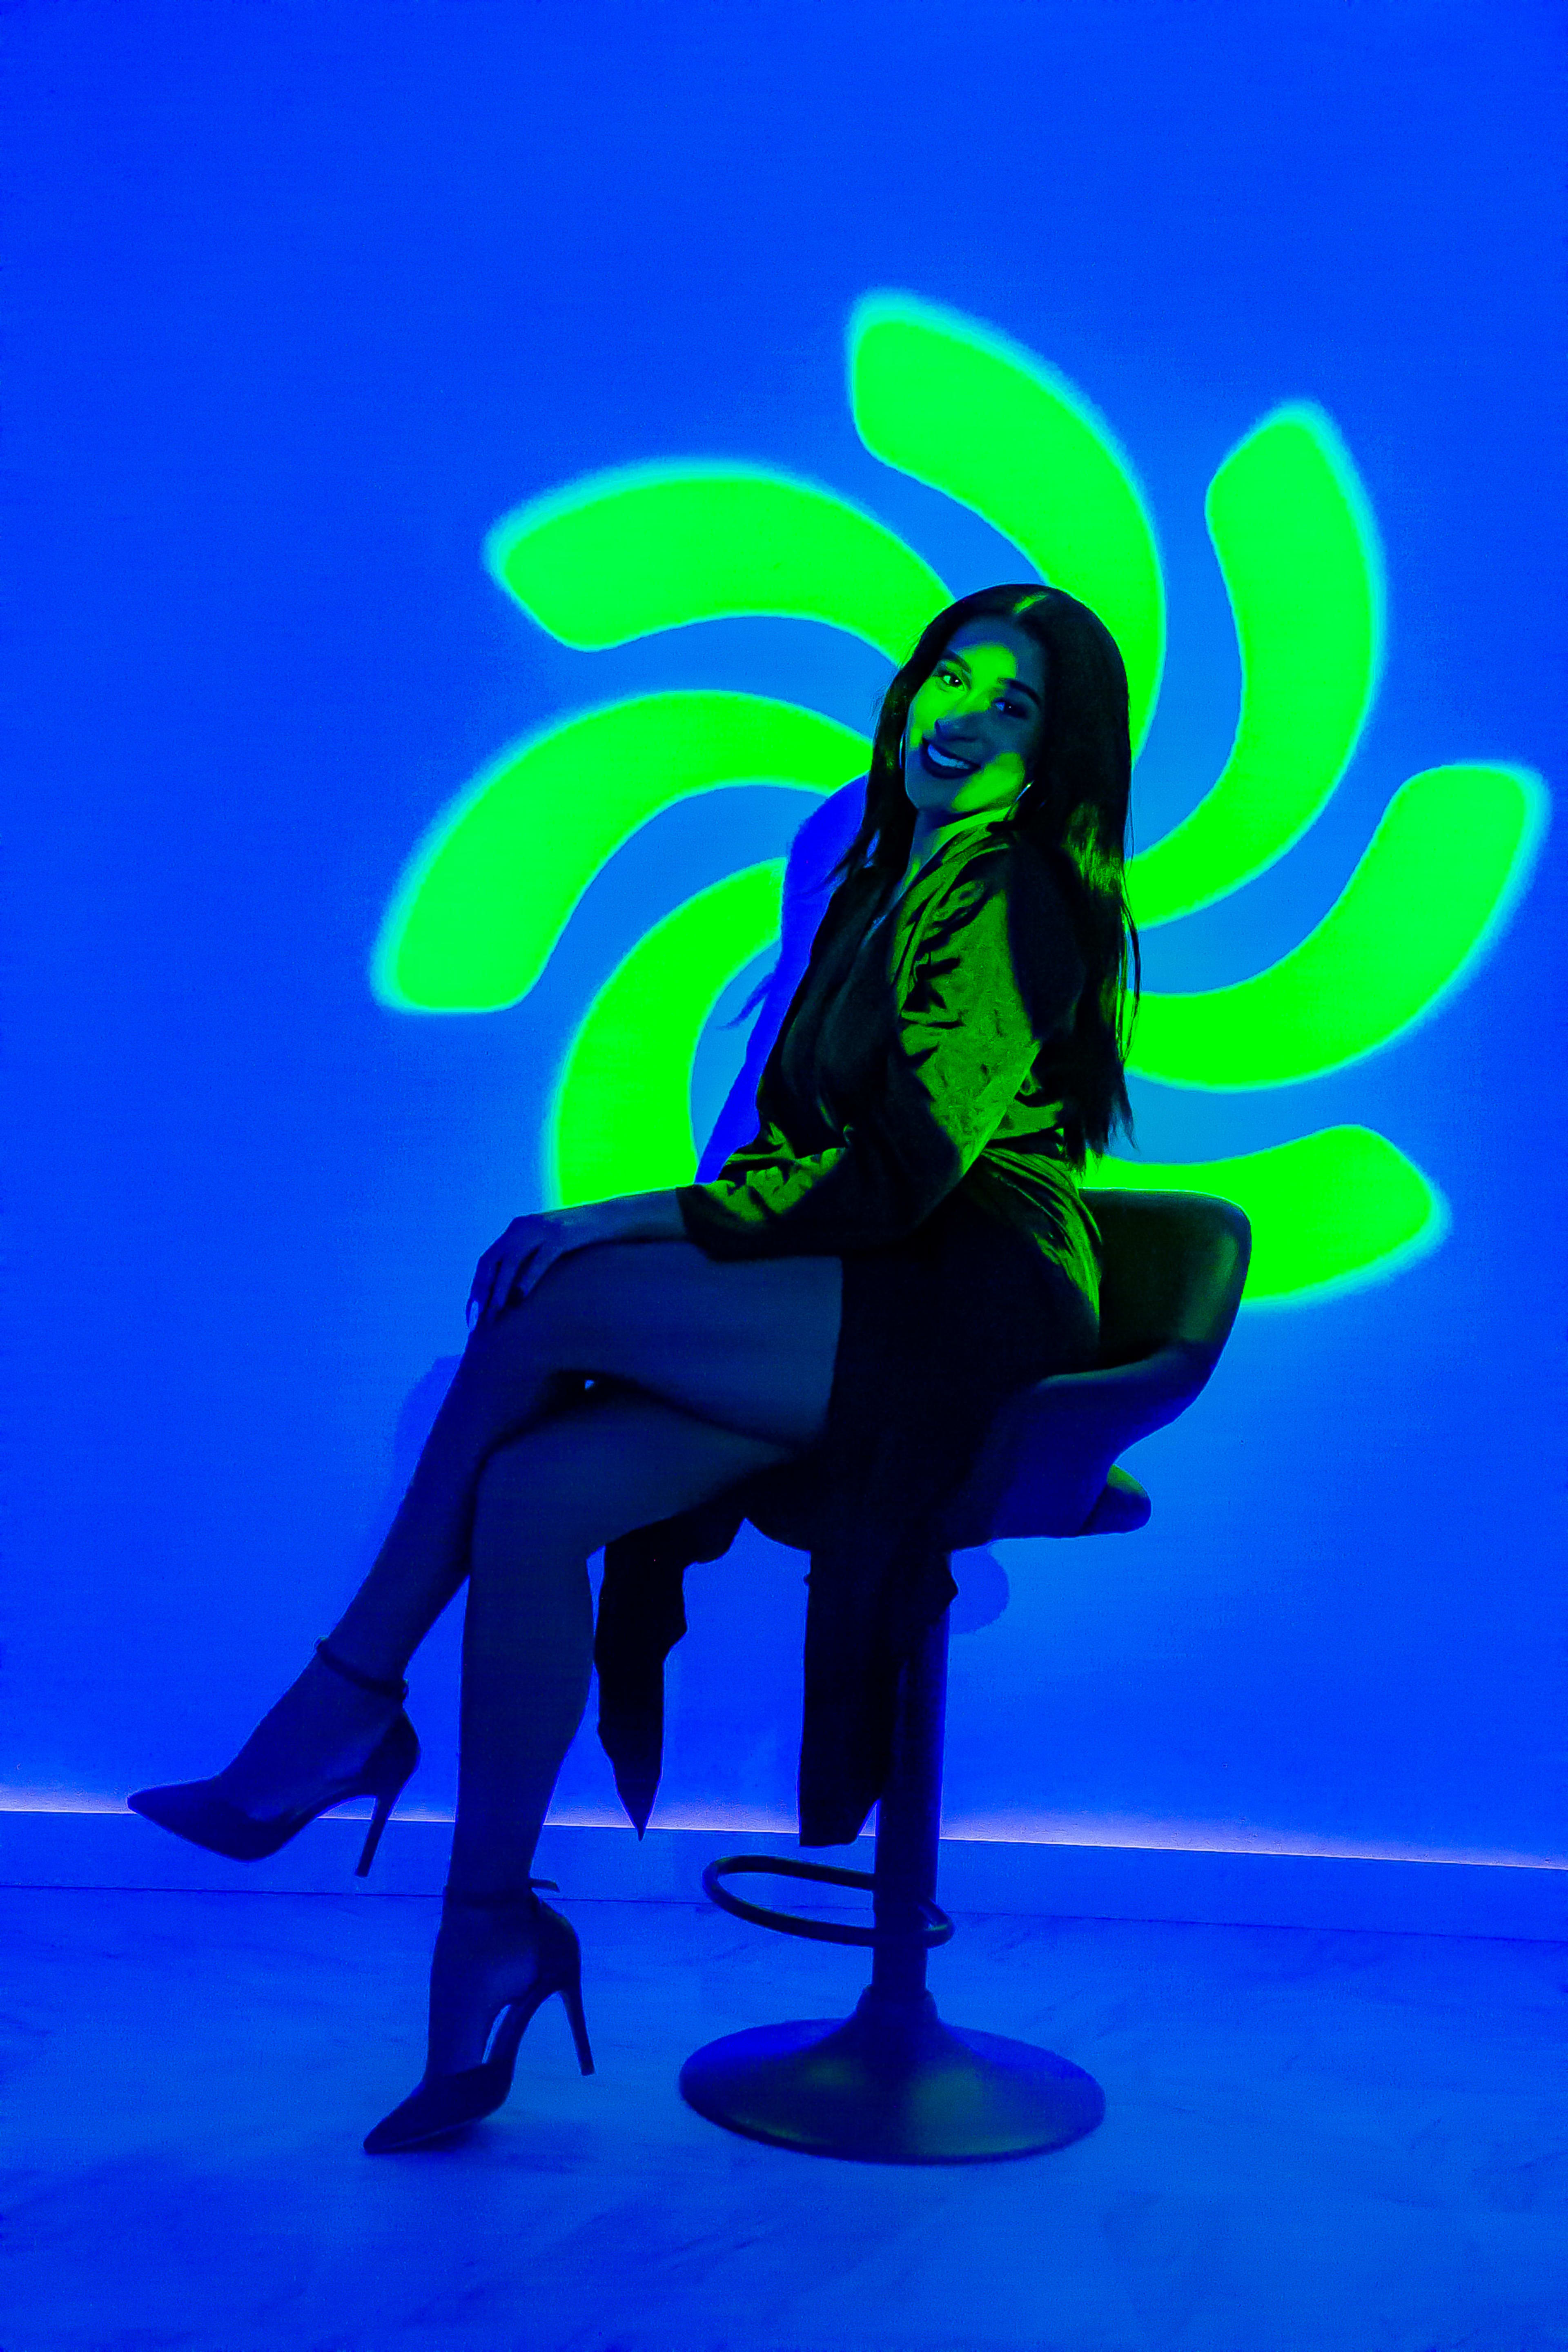 Una sesión de fotos de moda de una mujer en una silla frente a una pared azul neón.